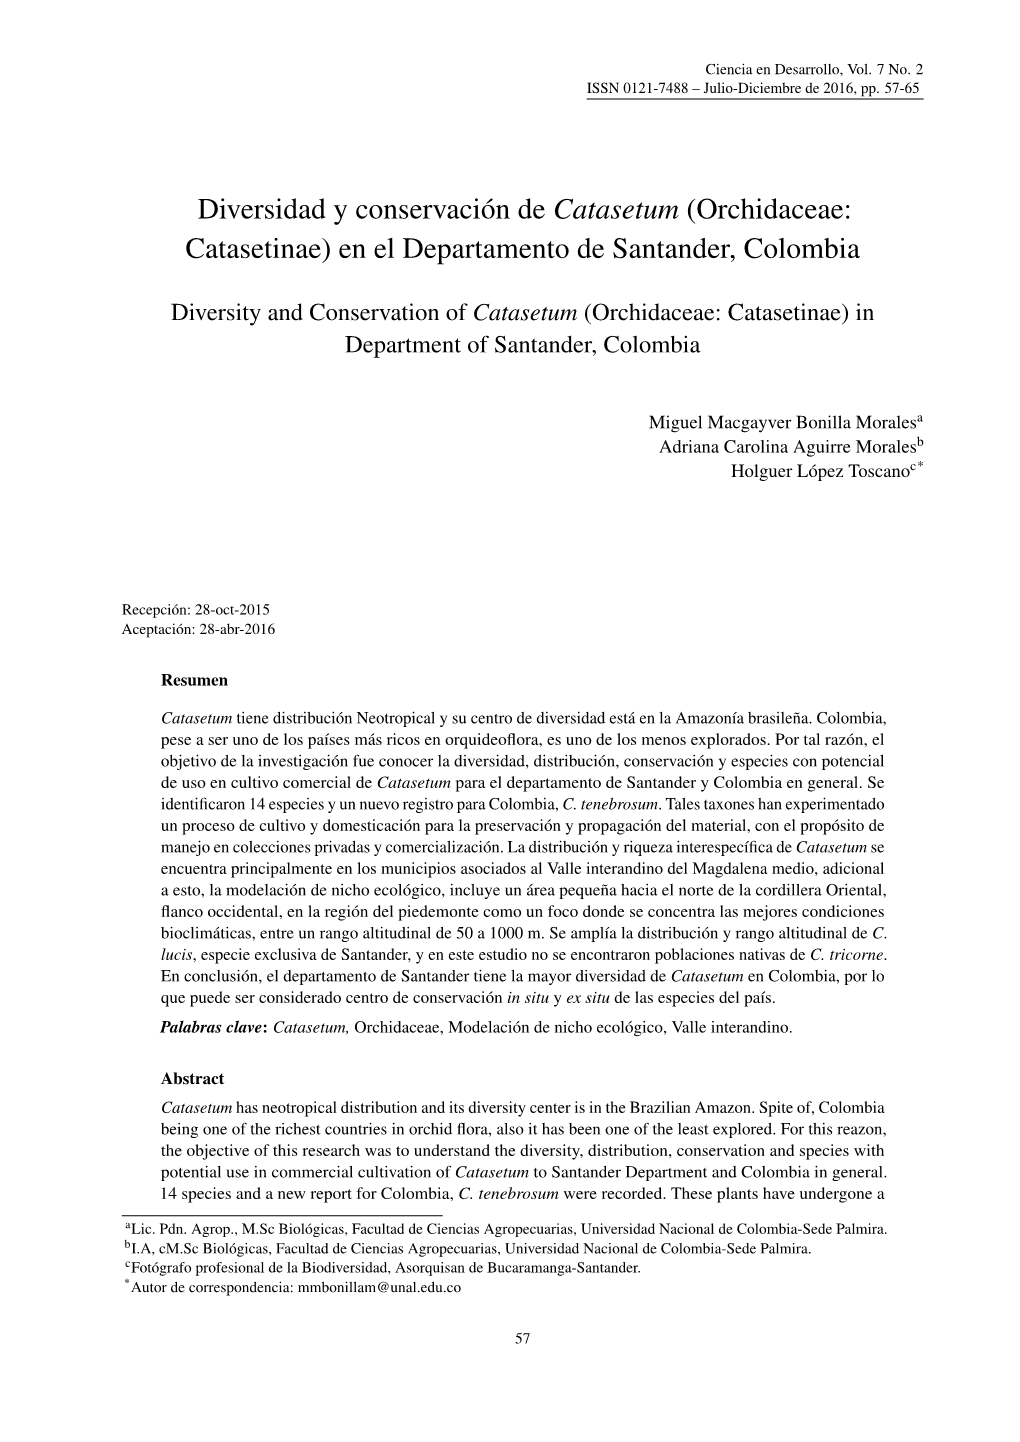 Diversidad Y Conservación De Catasetum (Orchidaceae: Catasetinae) En El Departamento De Santander, Colombia